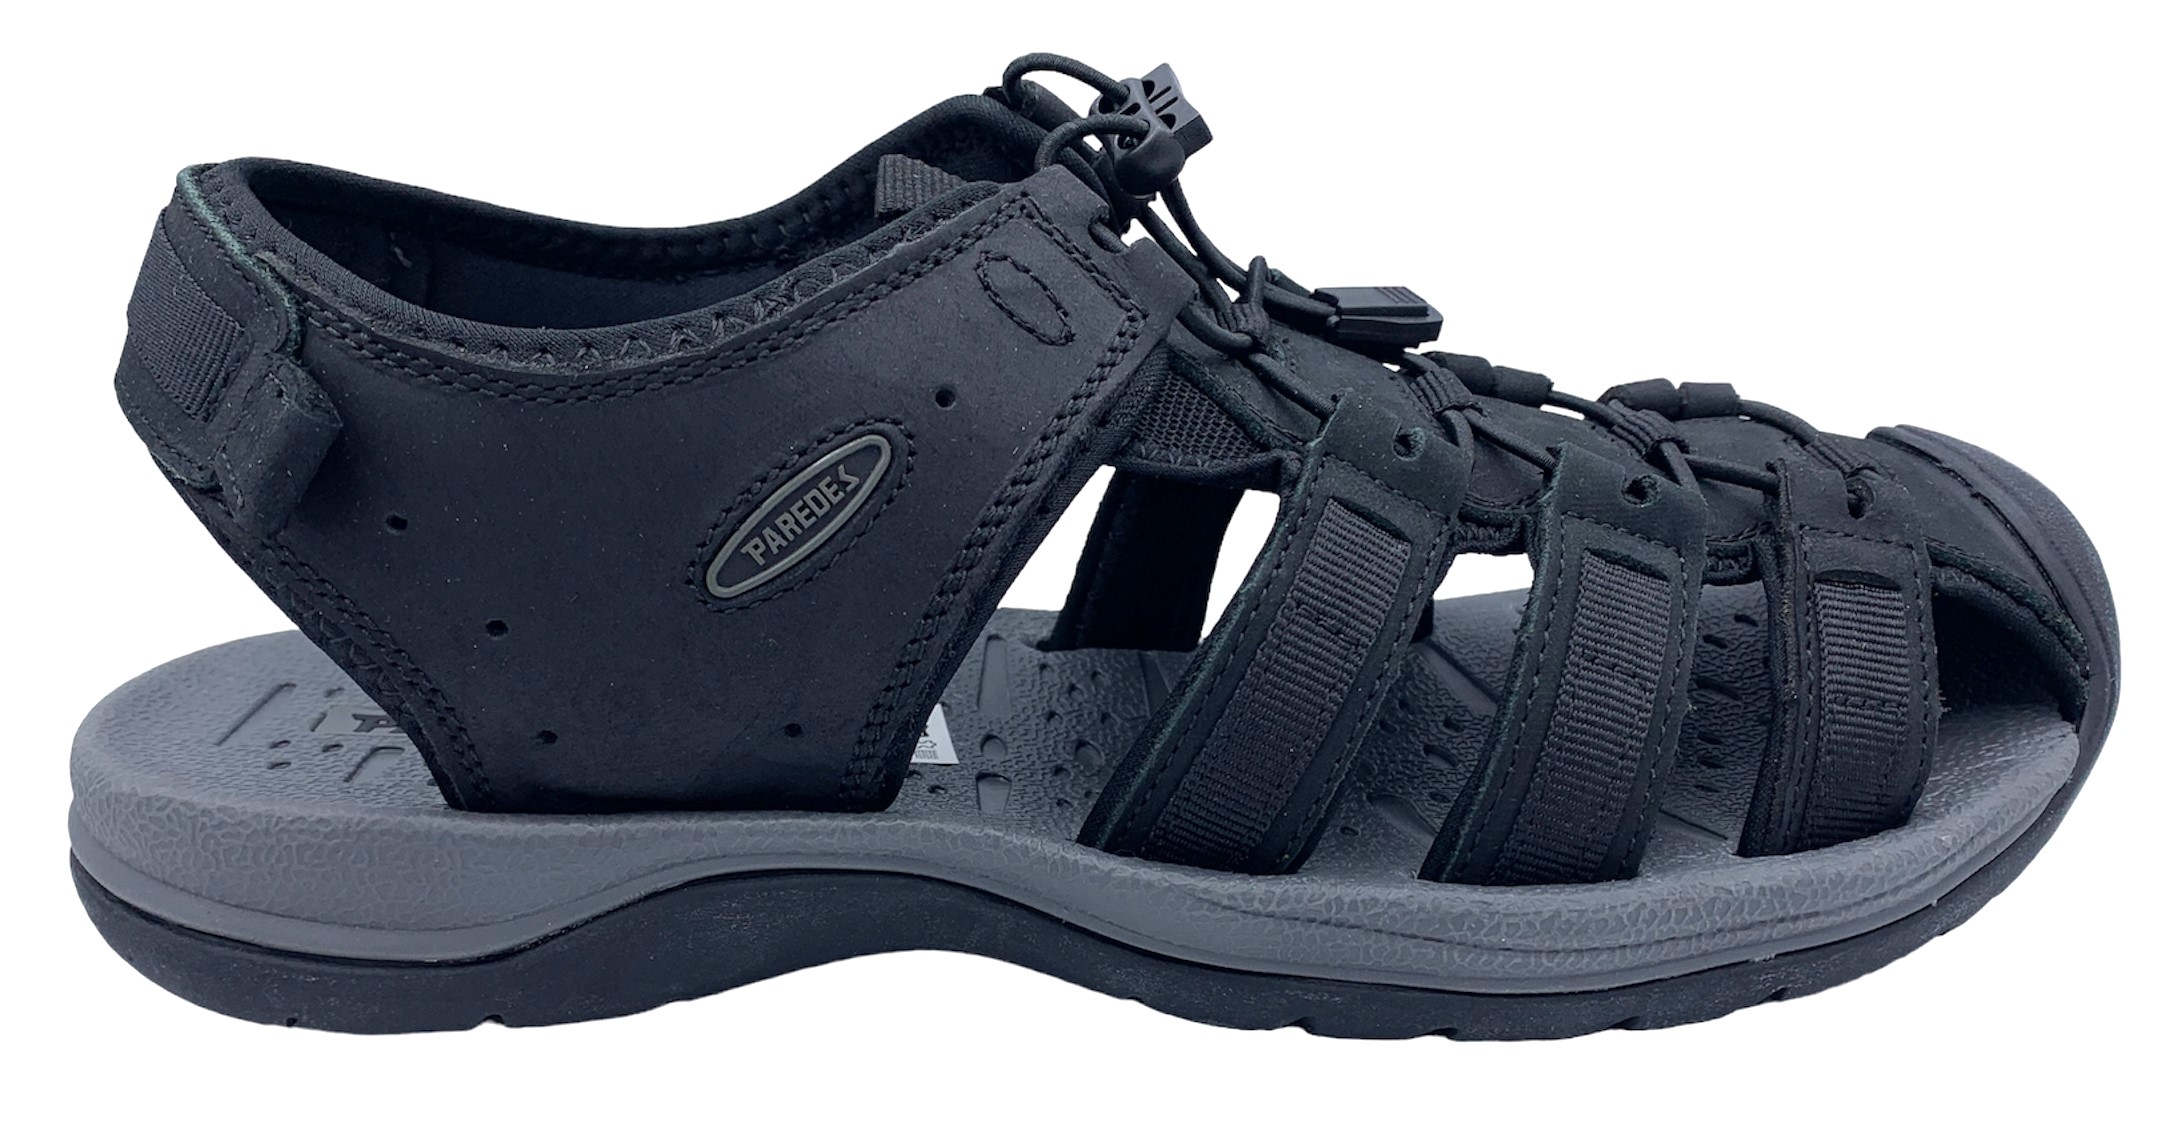 Pánské kožené sandále Misstic Paredes 22175 černé Velikost: 42 (EU)